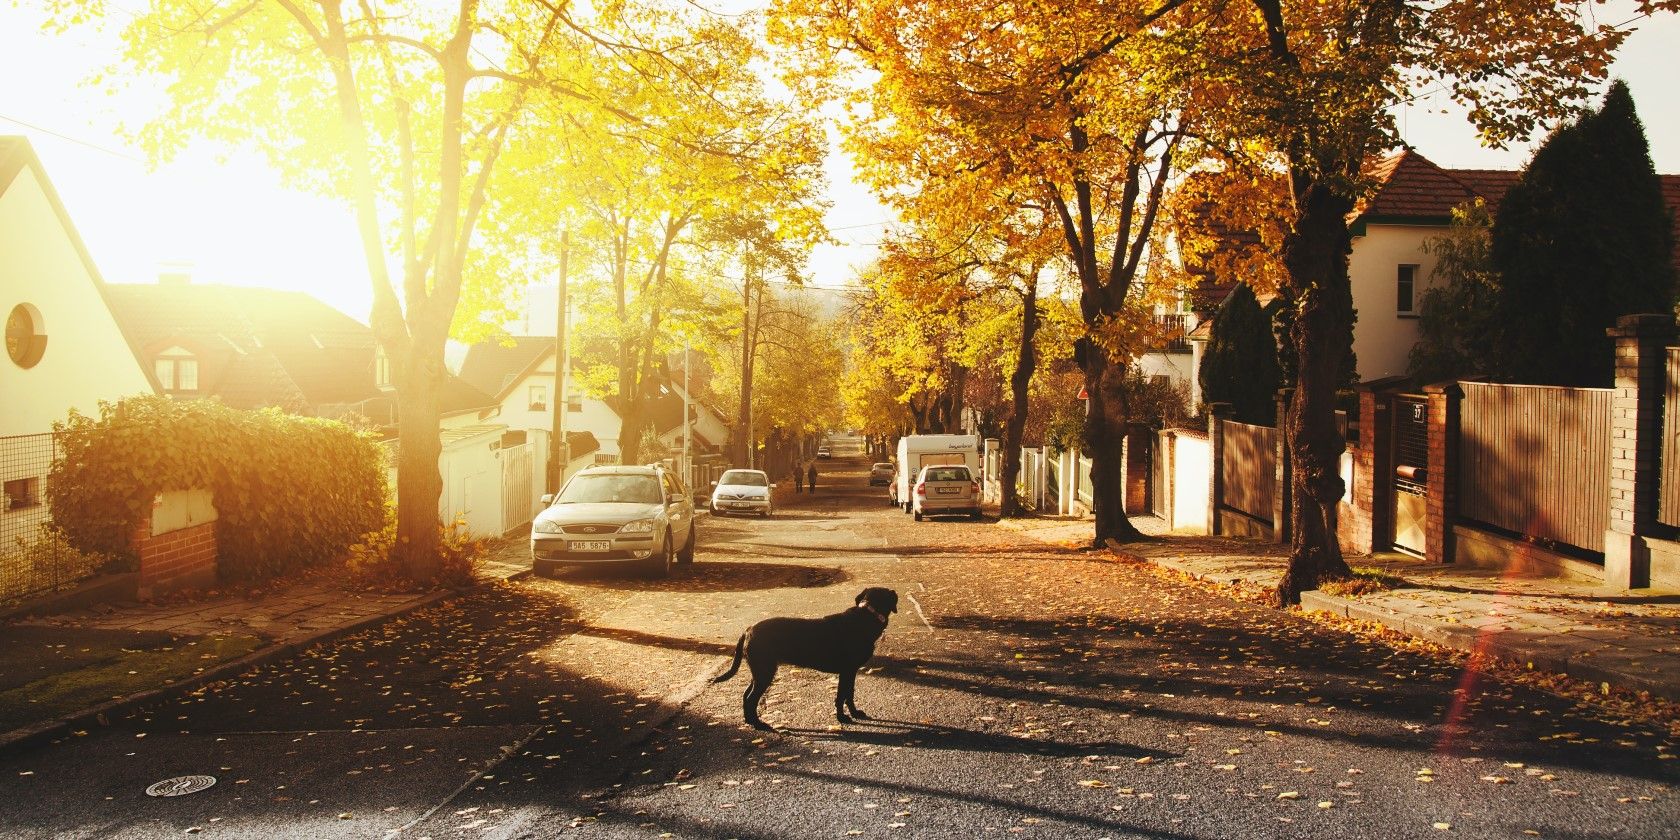 A dog standing on a sunlit neighborhood street